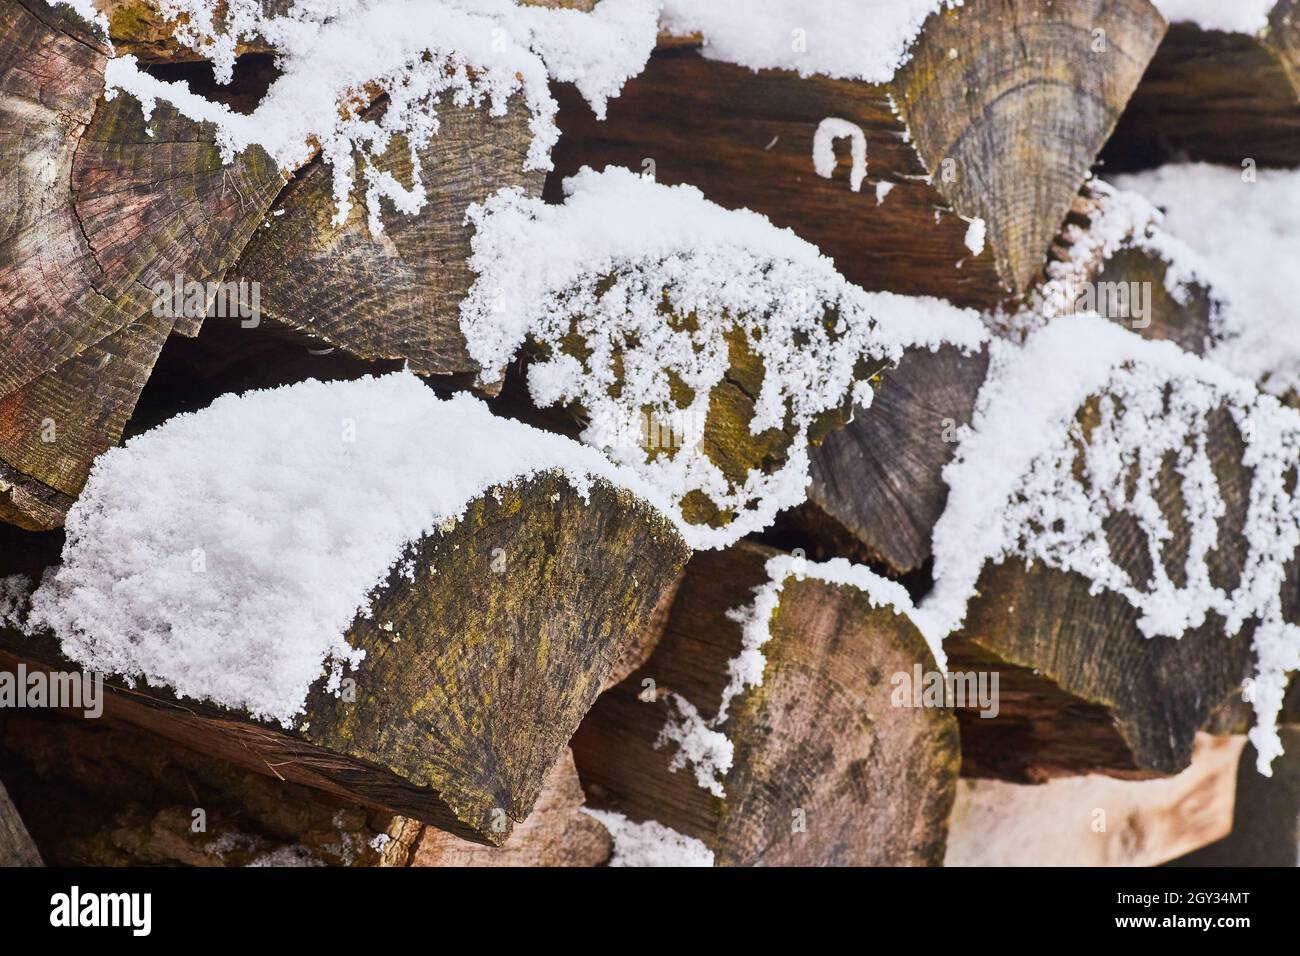 Détail de la neige sur les bûches de bois de chauffage Banque D'Images